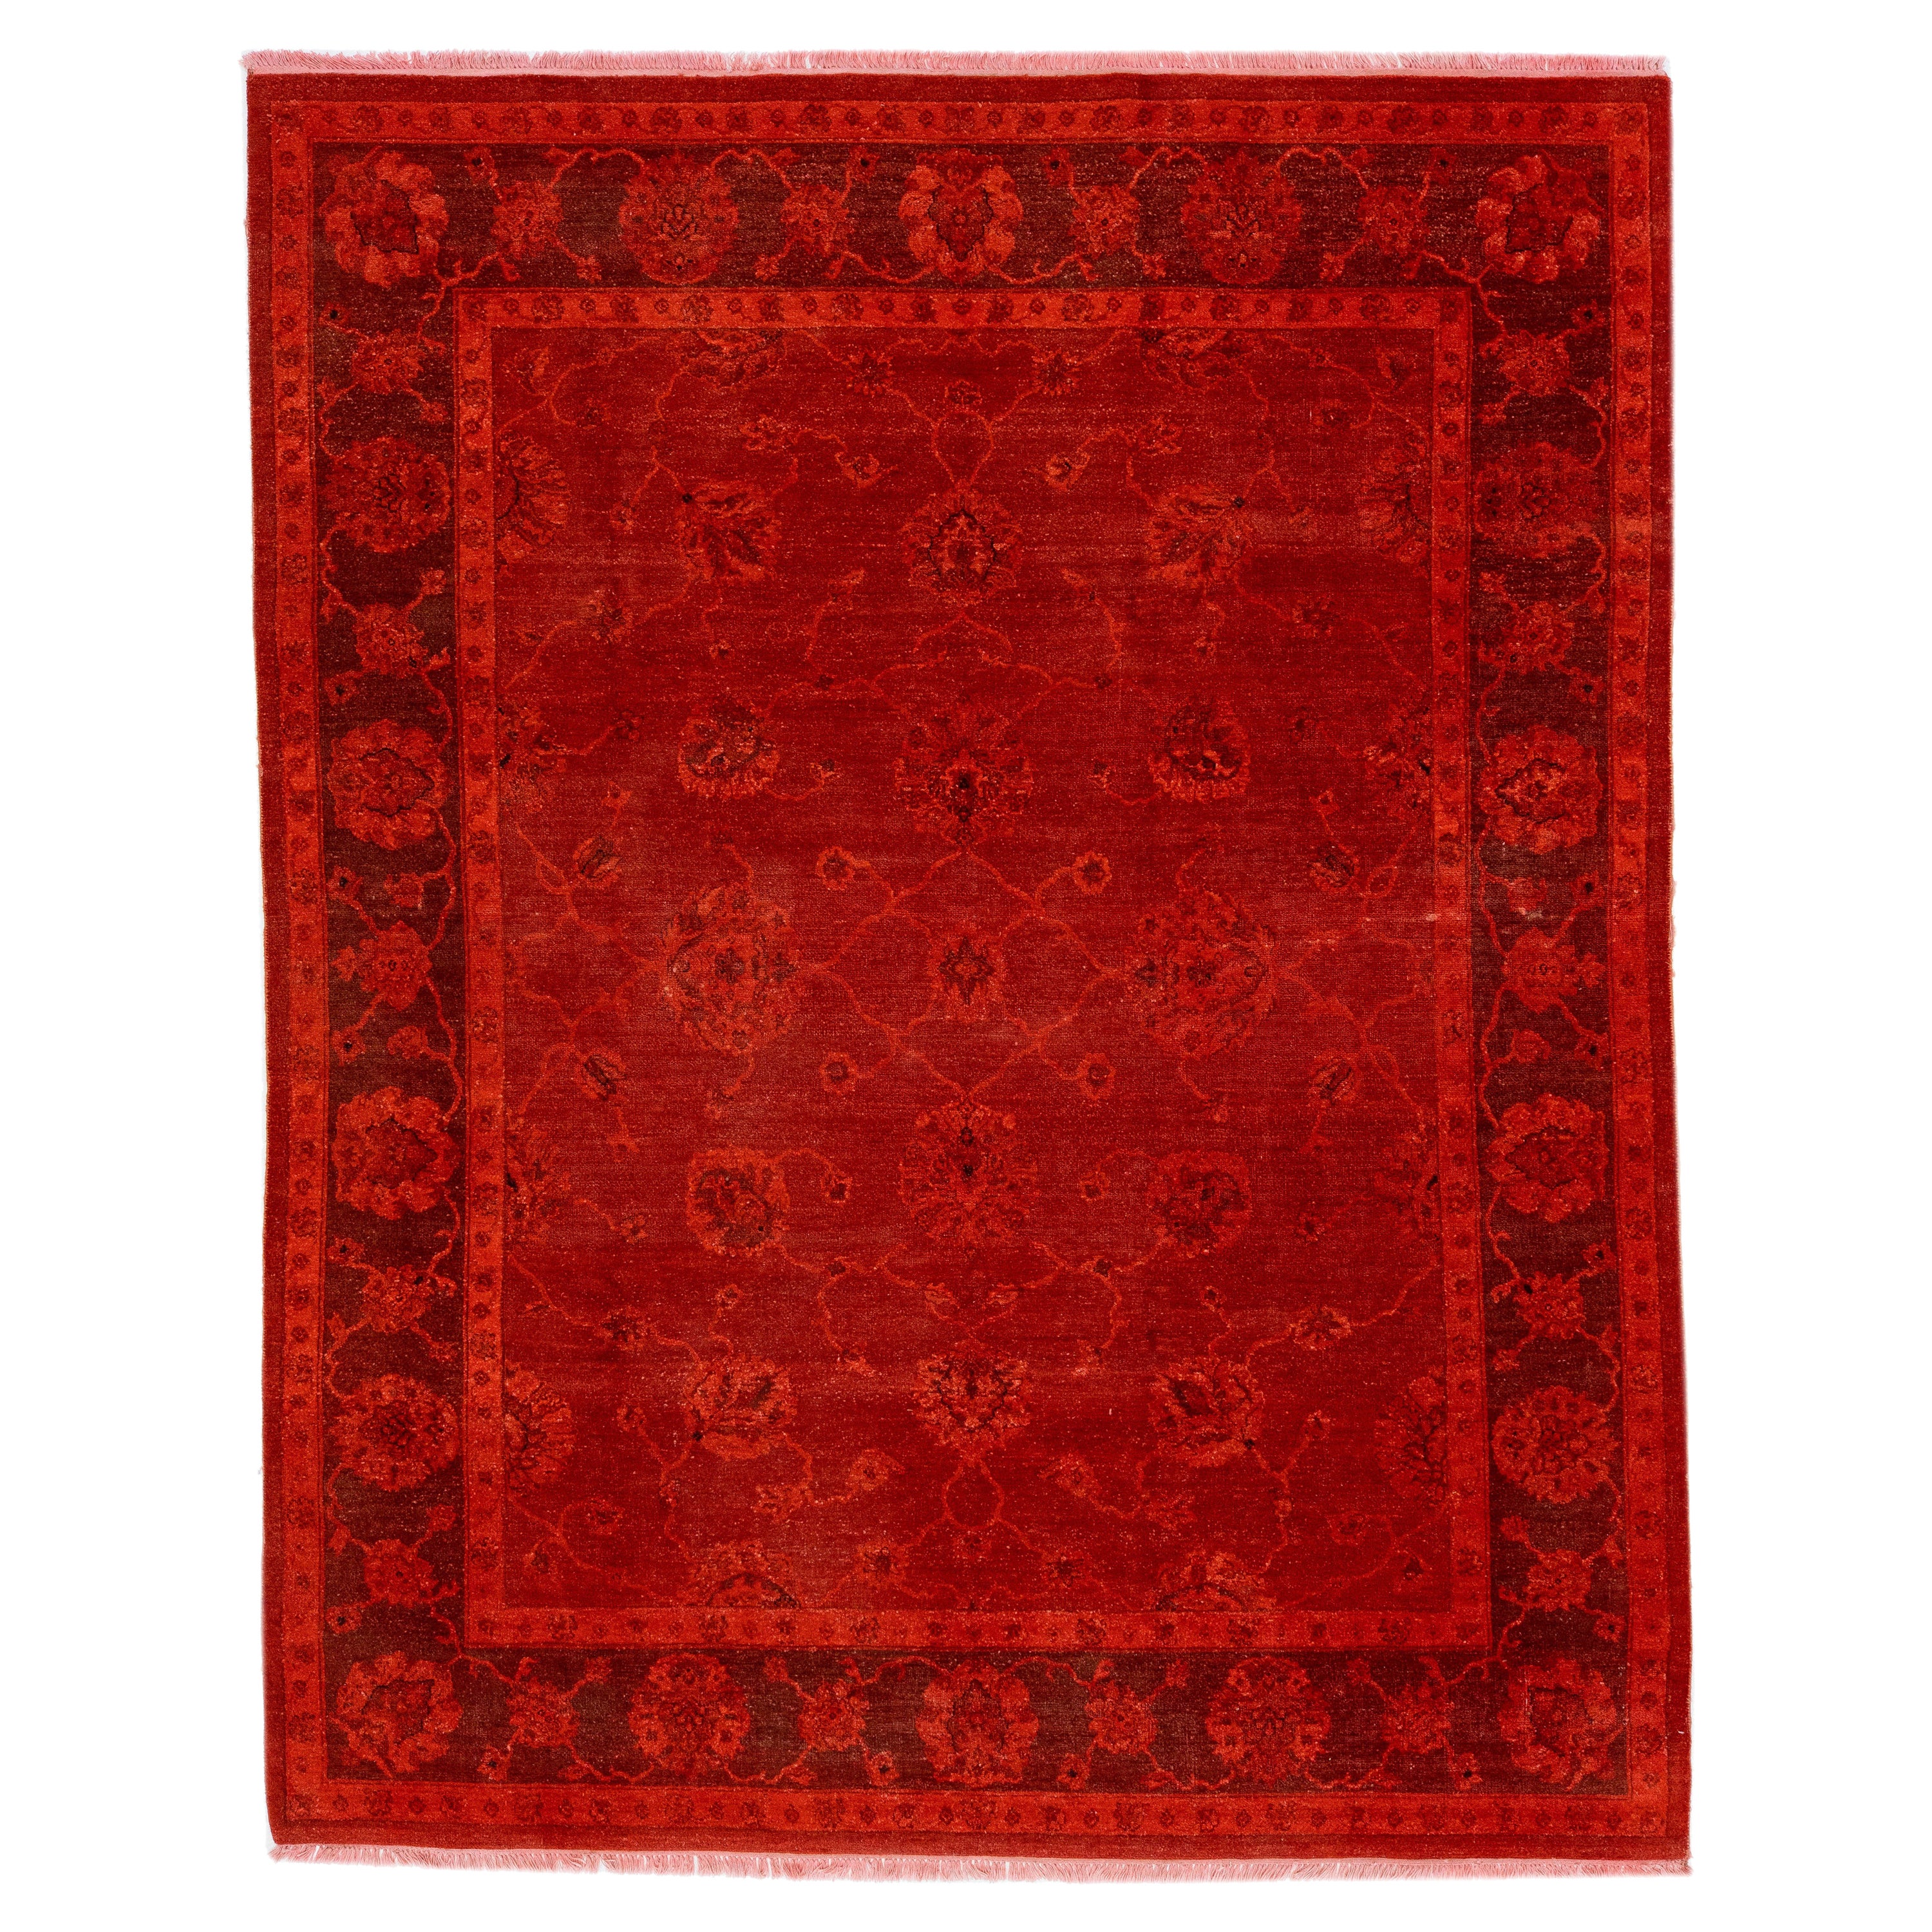 Tapis en laine rouge overdye Art & Crafts moderne fait à la main avec un motif floral